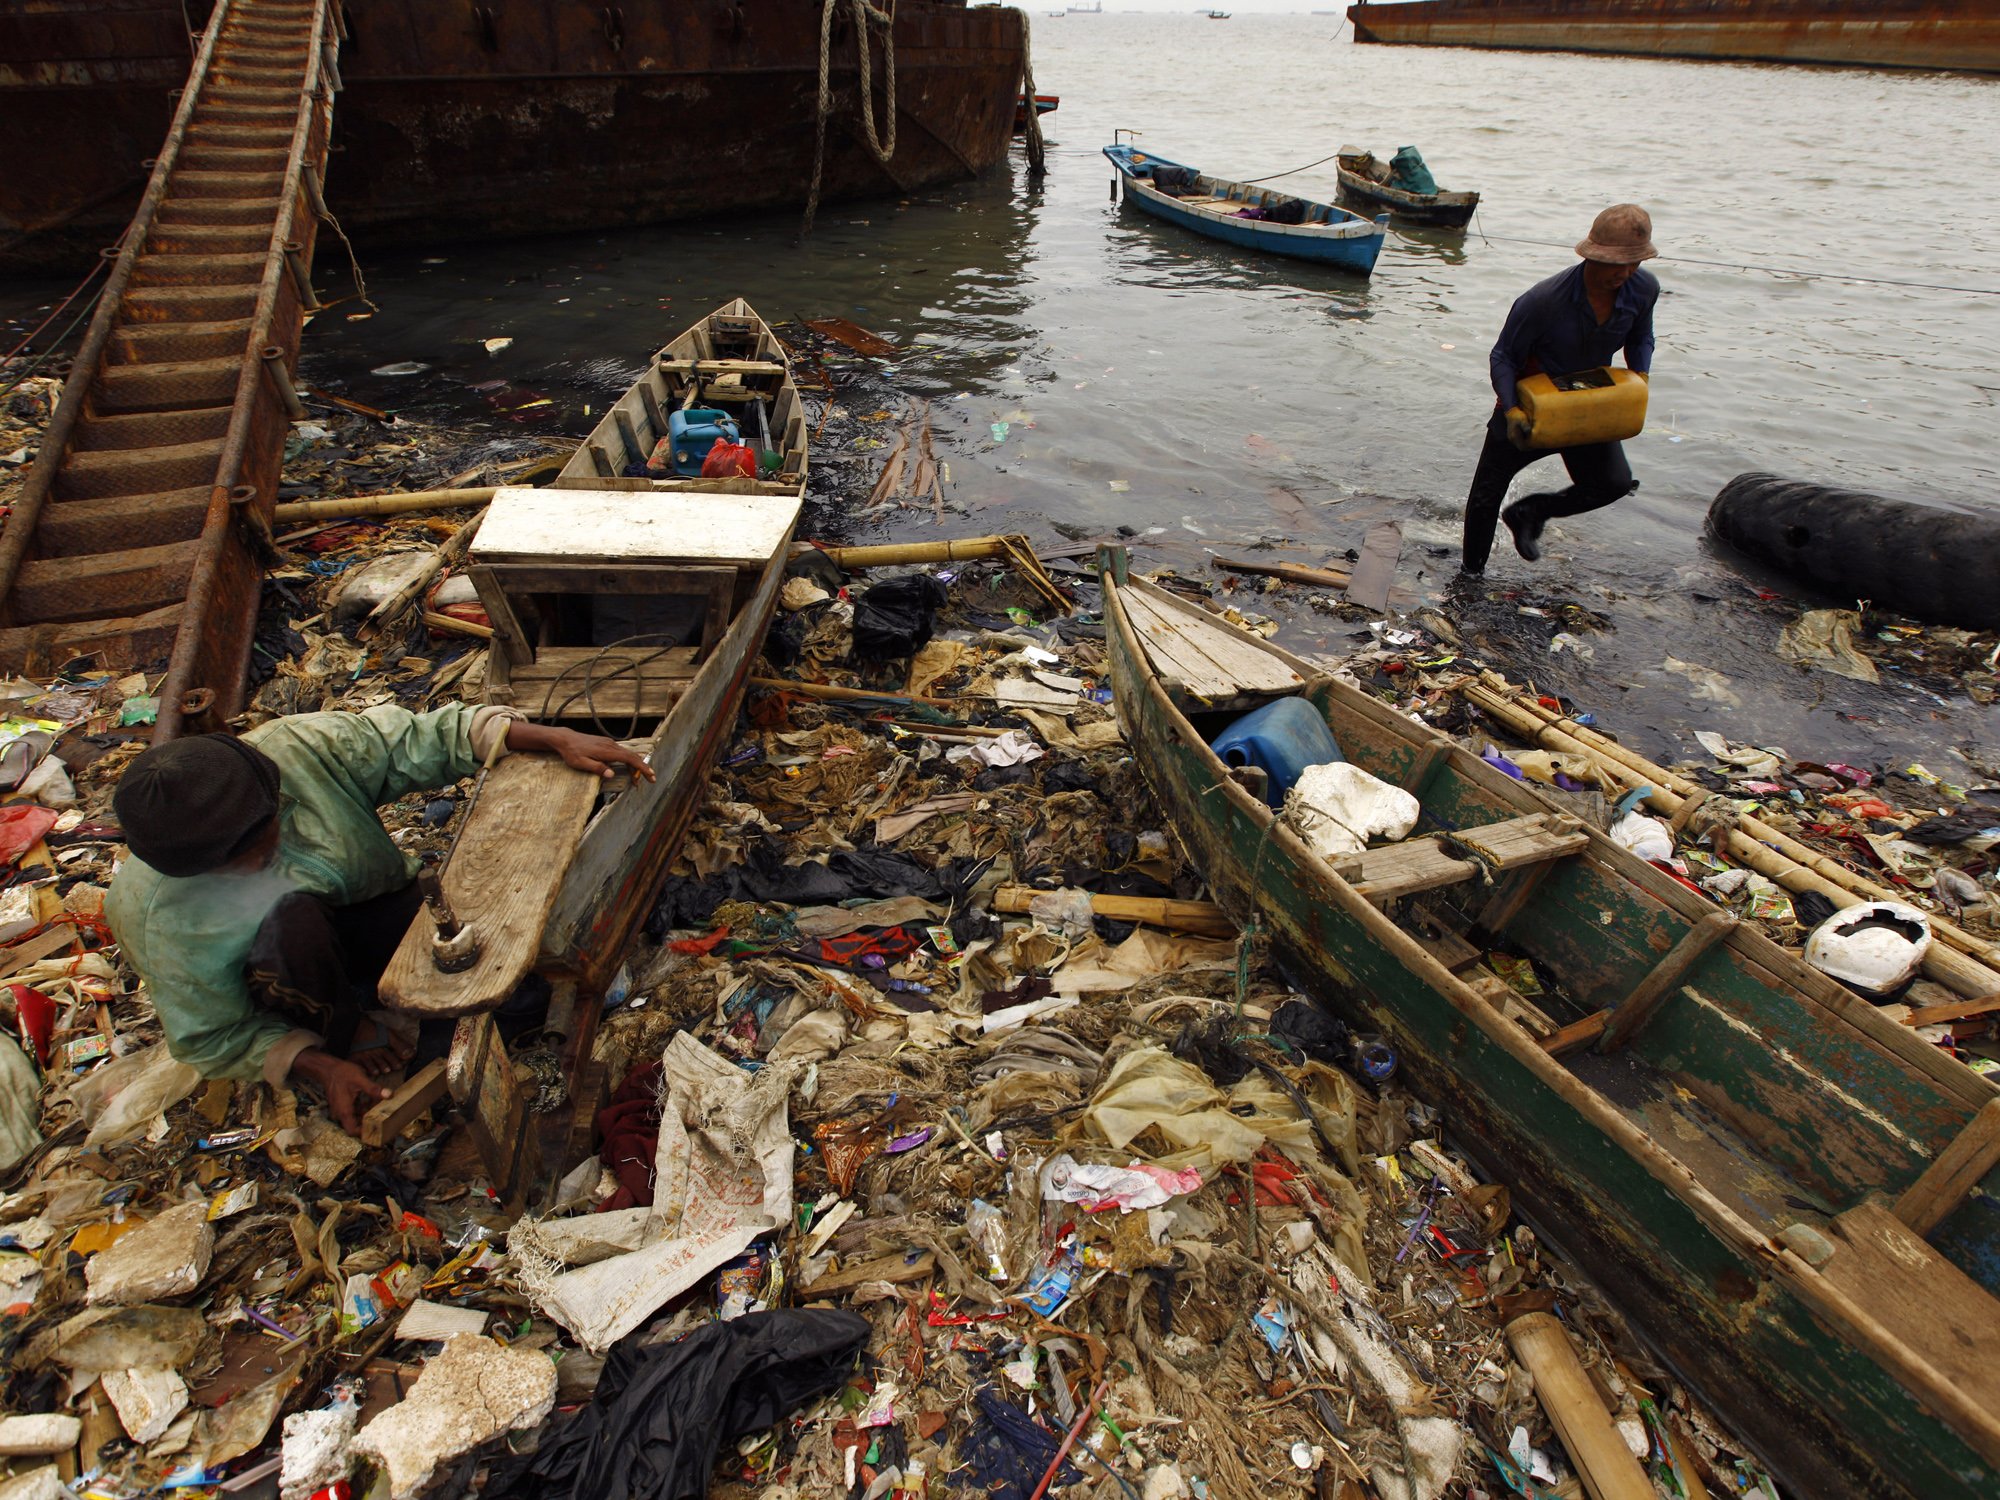 Genangan sampah ini terlihat di Cilincing, Jakarta Utara, pada 5 Juni 2013. Foto: Beawiharta/Reuters